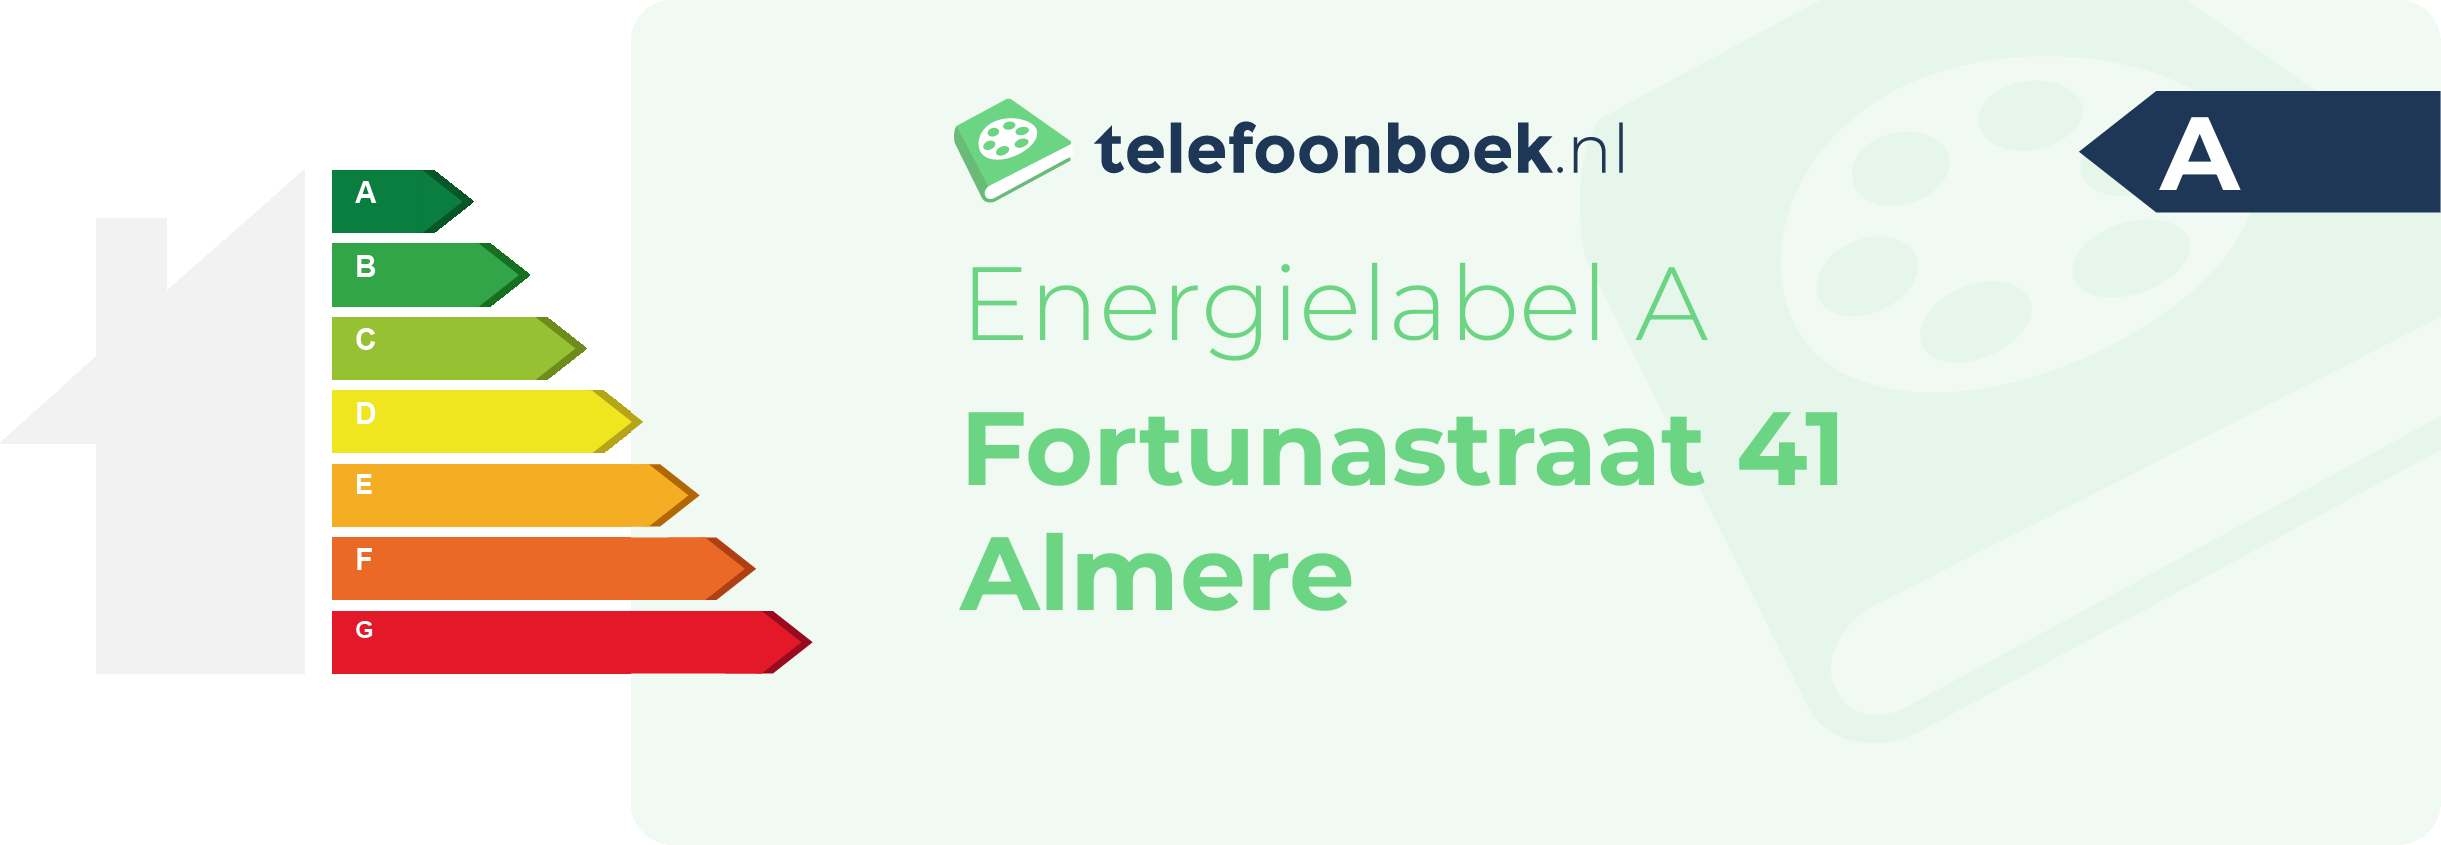 Energielabel Fortunastraat 41 Almere